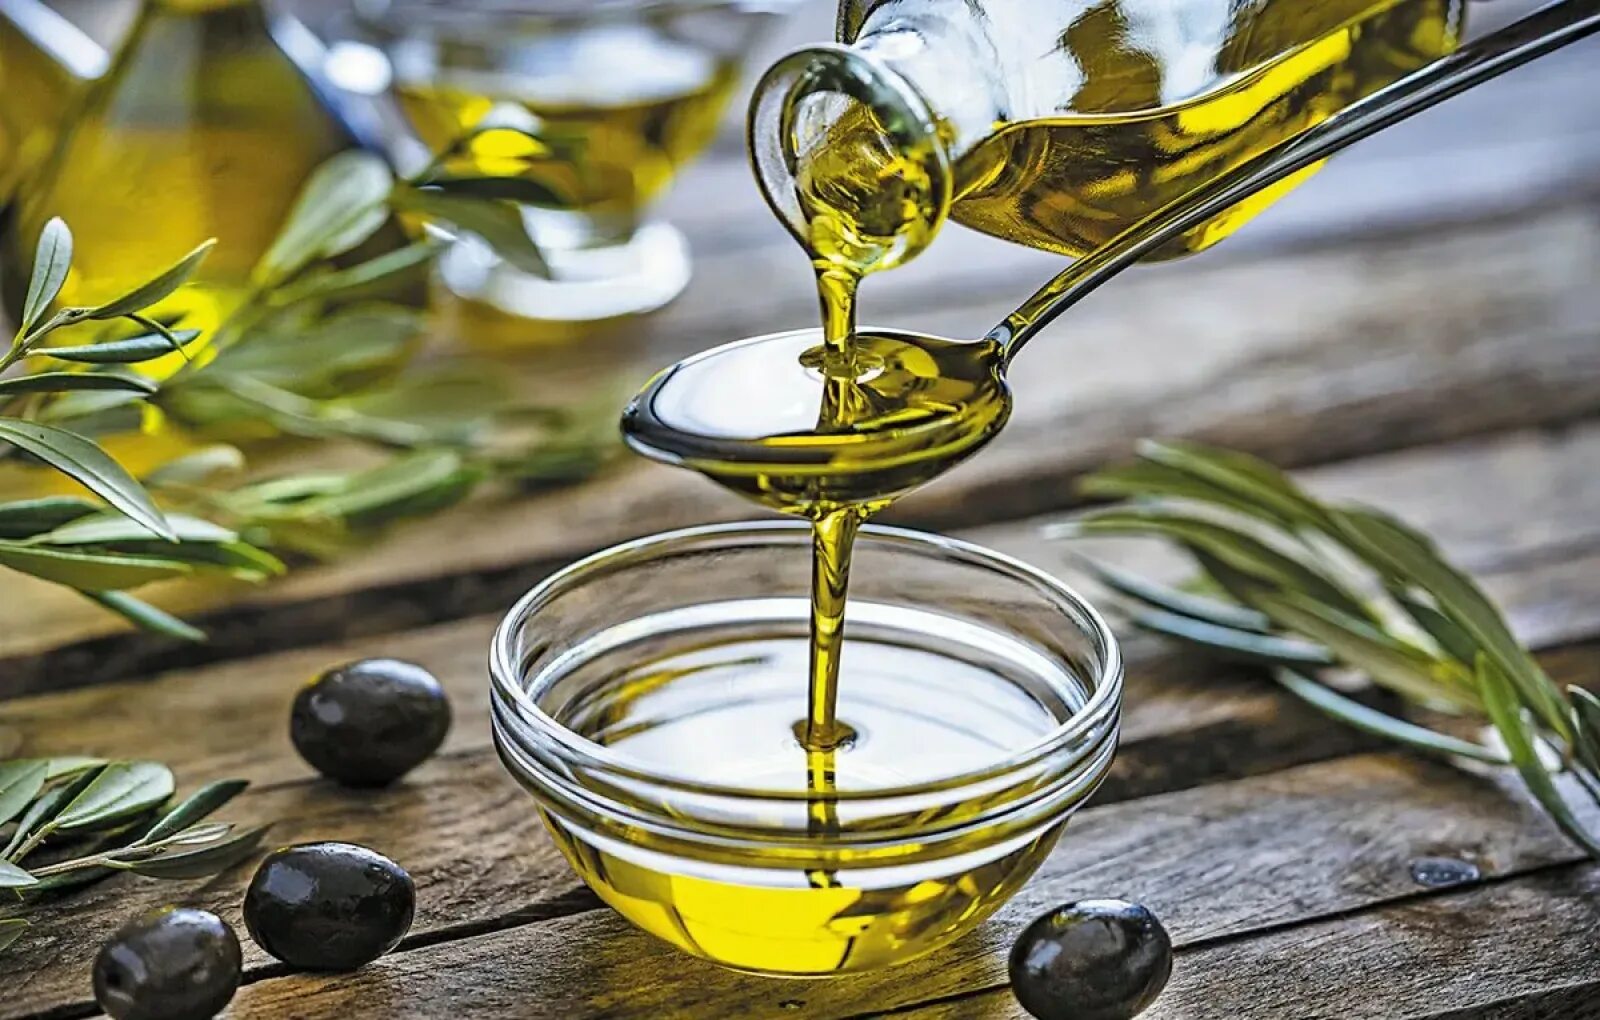 Olive Oil масло оливковое. Олив Ойл масло оливковое. Масло с оливковым маслом. Оливки и оливковое масло. Оливковое масло застывает